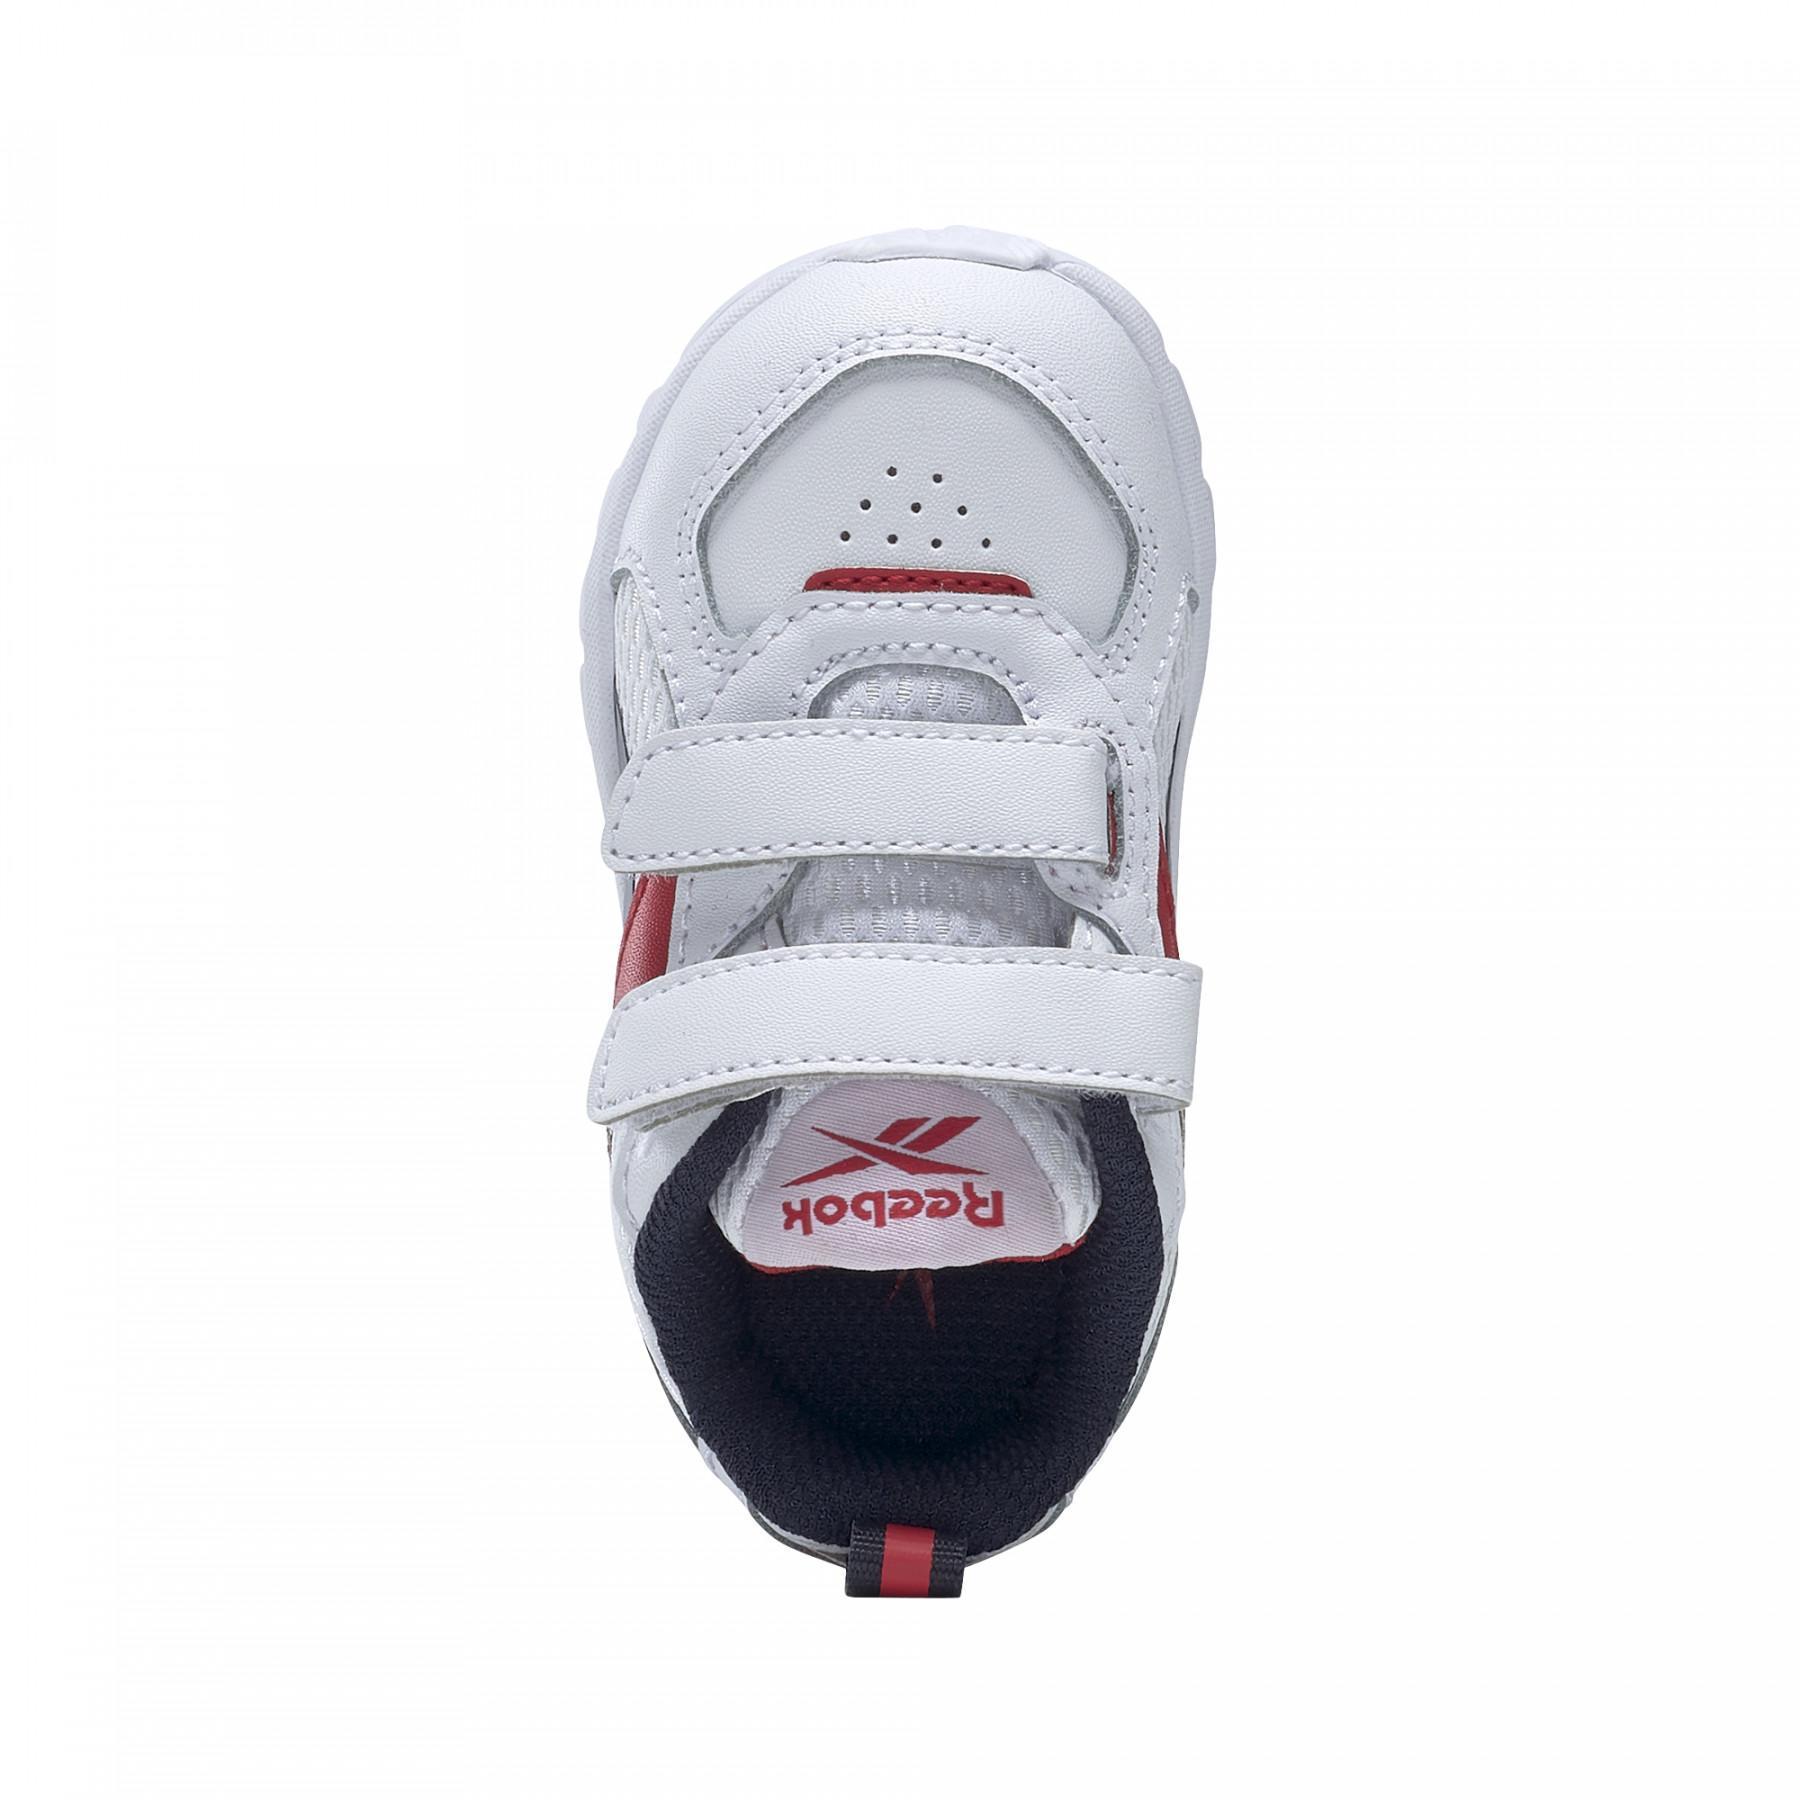 Zapatos para niños Reebok XT Sprinter